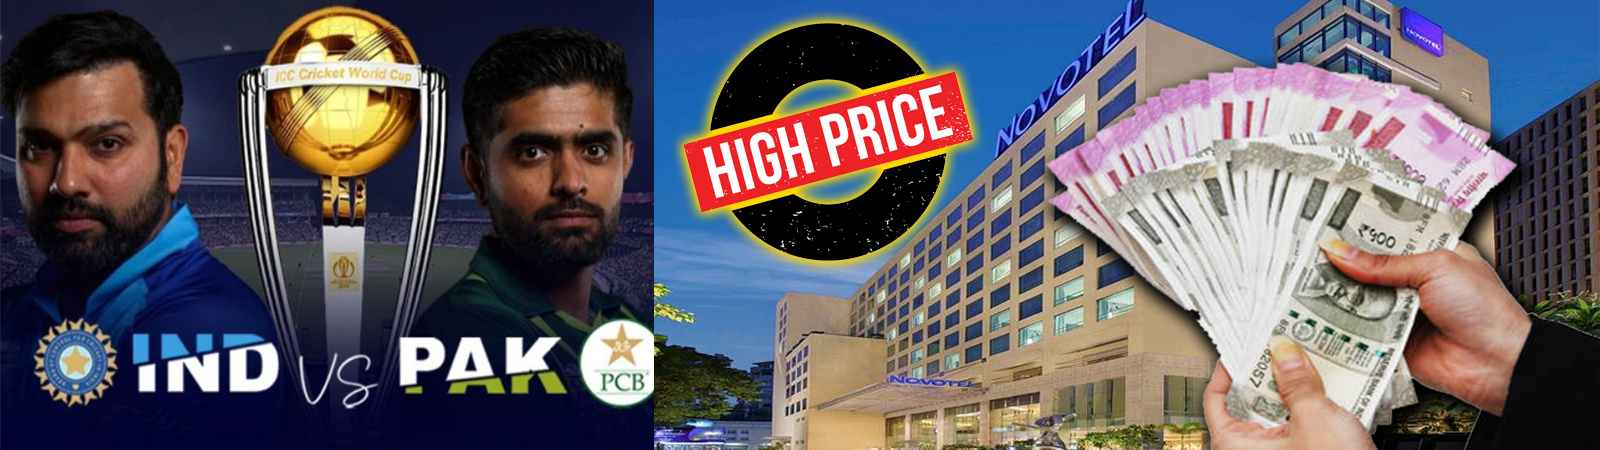 भारत VS पाकिस्तान मैच ने अहमदाबाद में बढ़ाया, होटल का 10 गुना किराया!!!